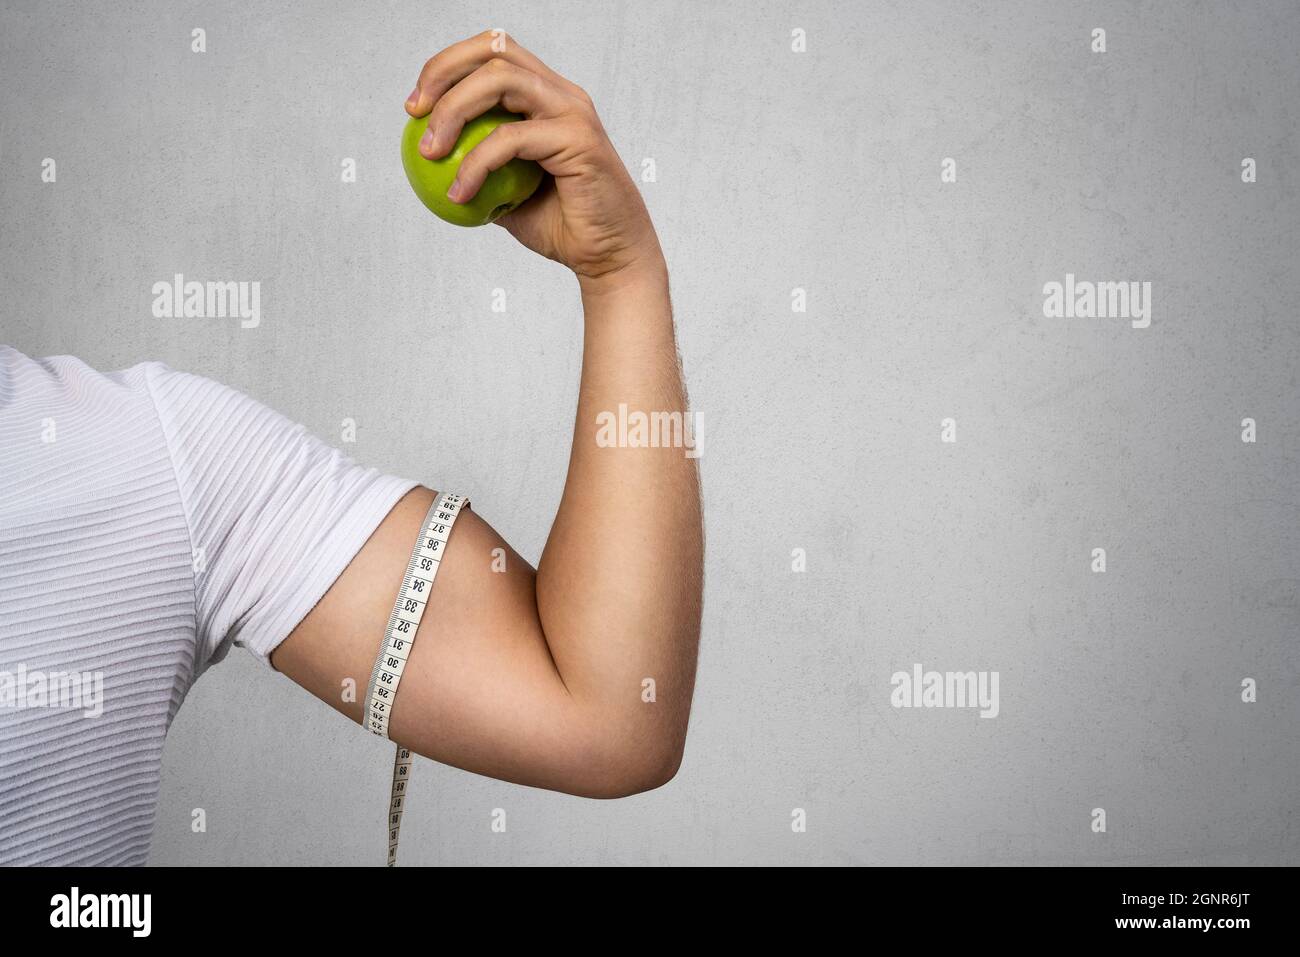 Jeune homme sportif tenant une pomme et montre ses biceps. Sport et alimentation pour une vie saine. Photo de haute qualité Banque D'Images